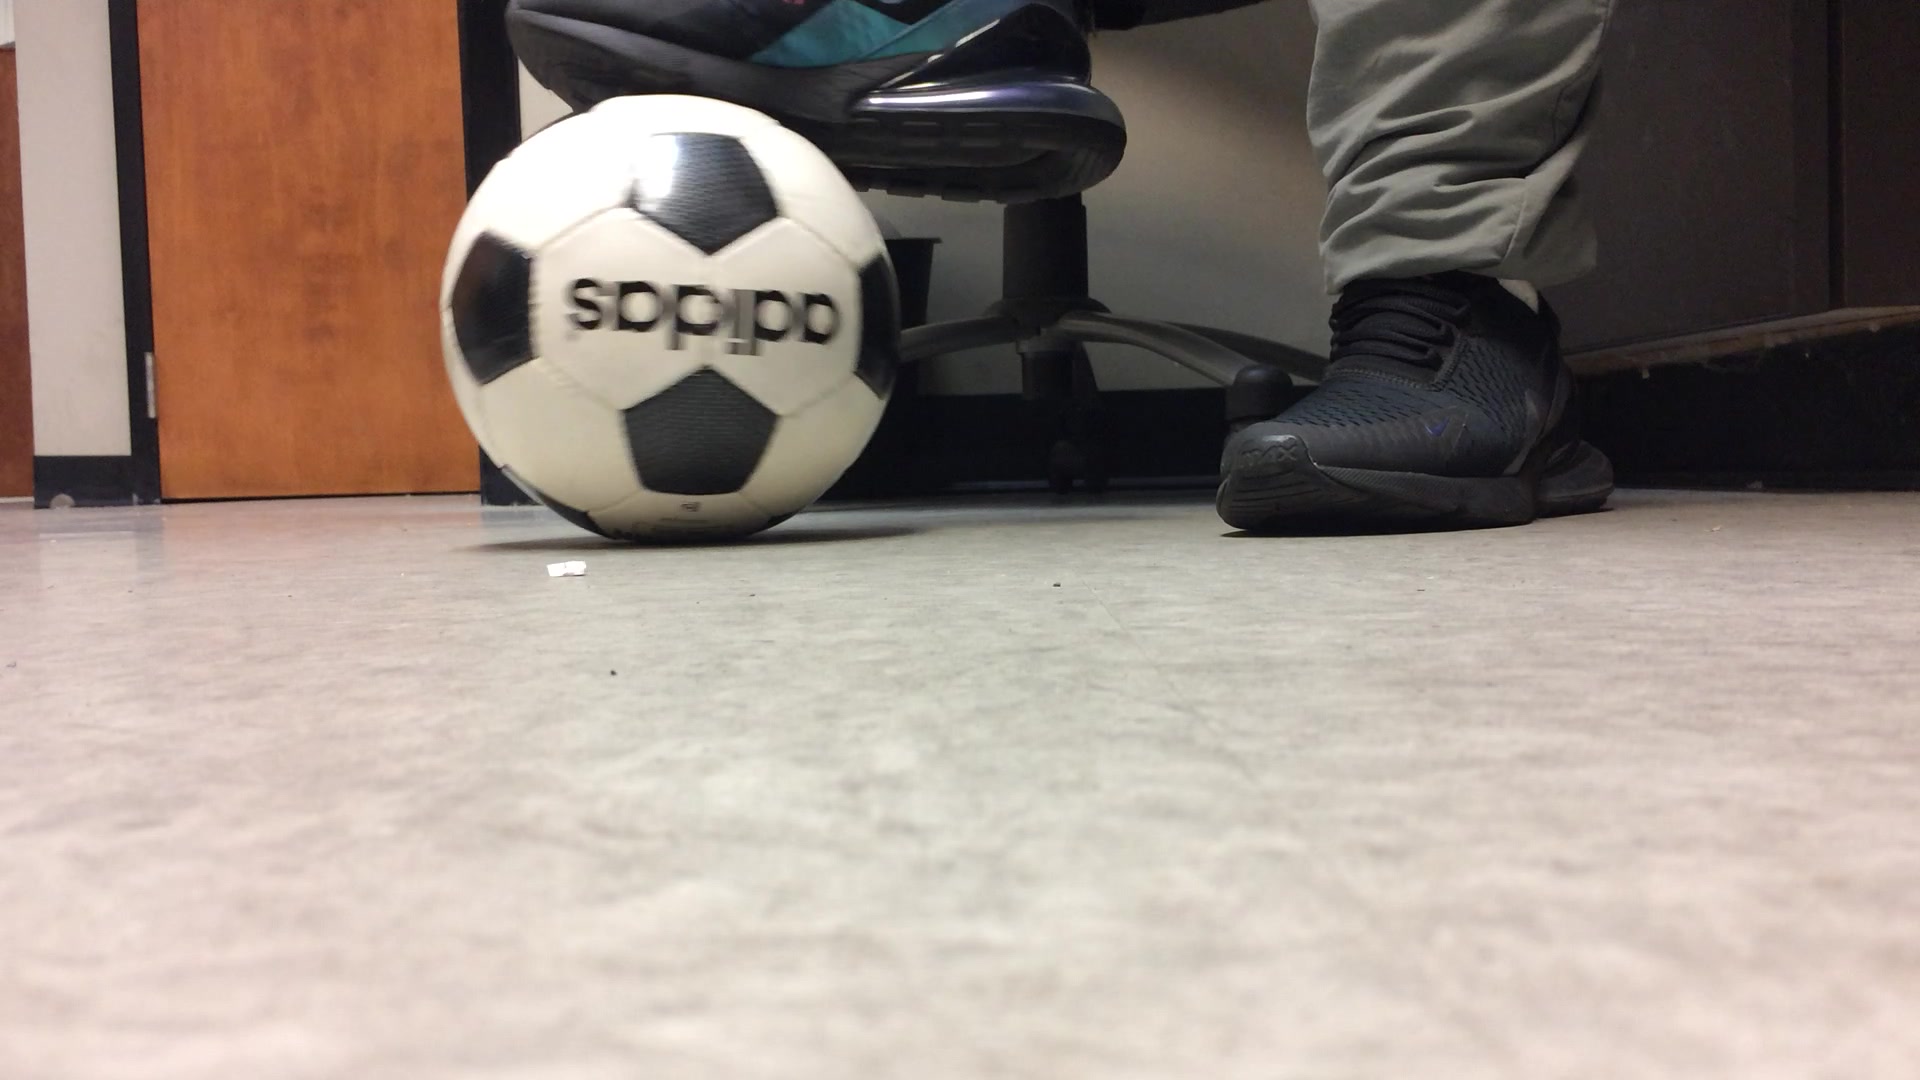 Air Max 270 Throwback and Adidas Soccer Ball